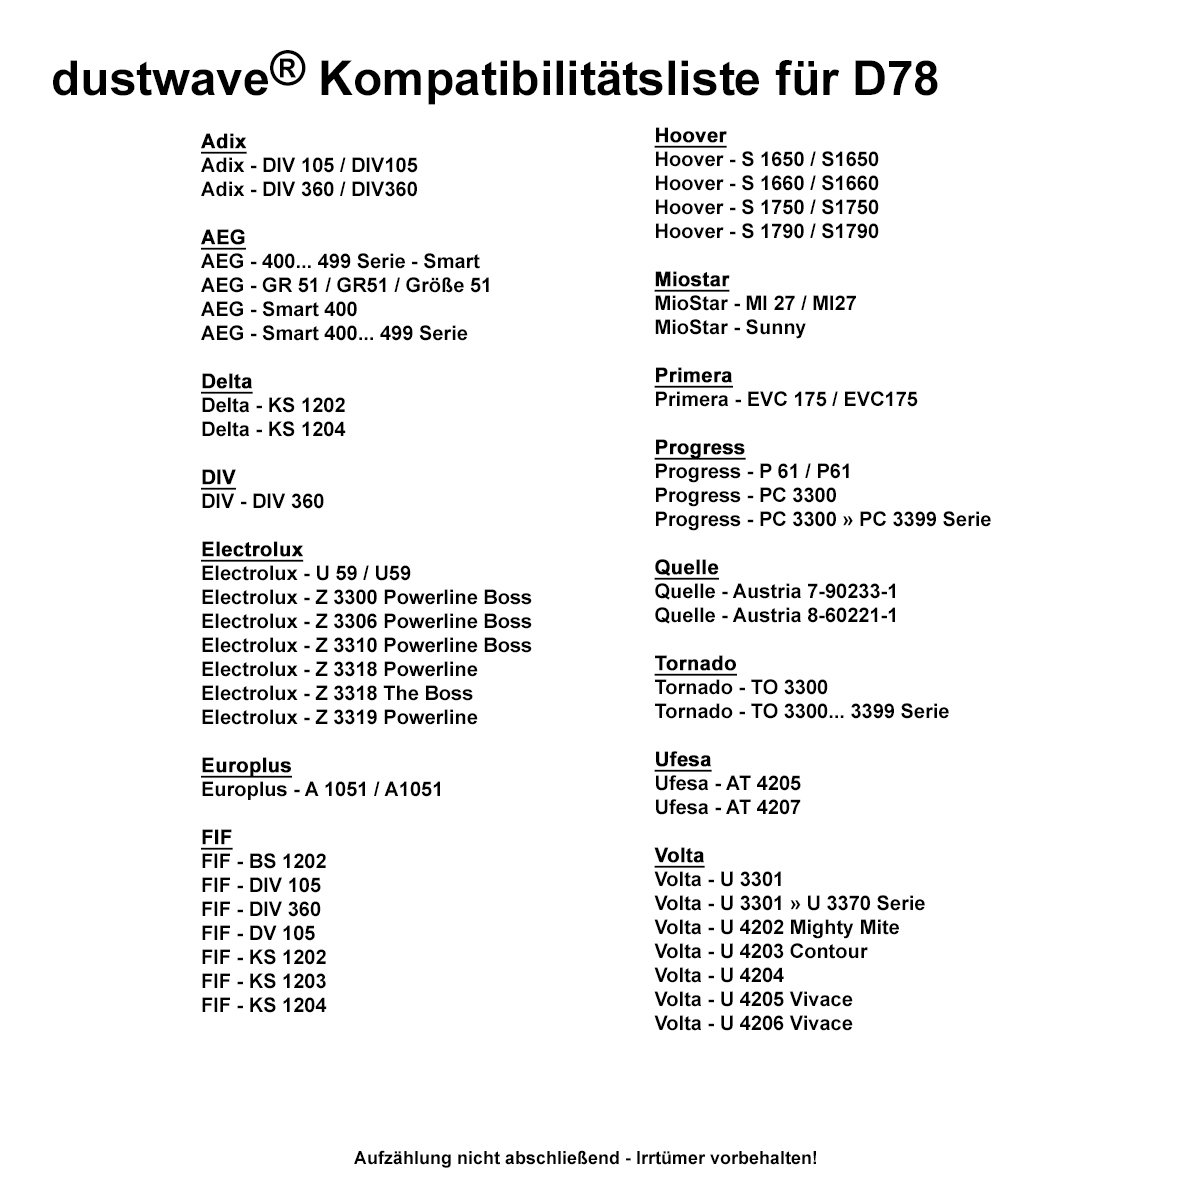 Dustwave® 20 Staubsaugerbeutel für AEG Smart 486 - hocheffizient mit Hygieneverschluss - Made in Germany